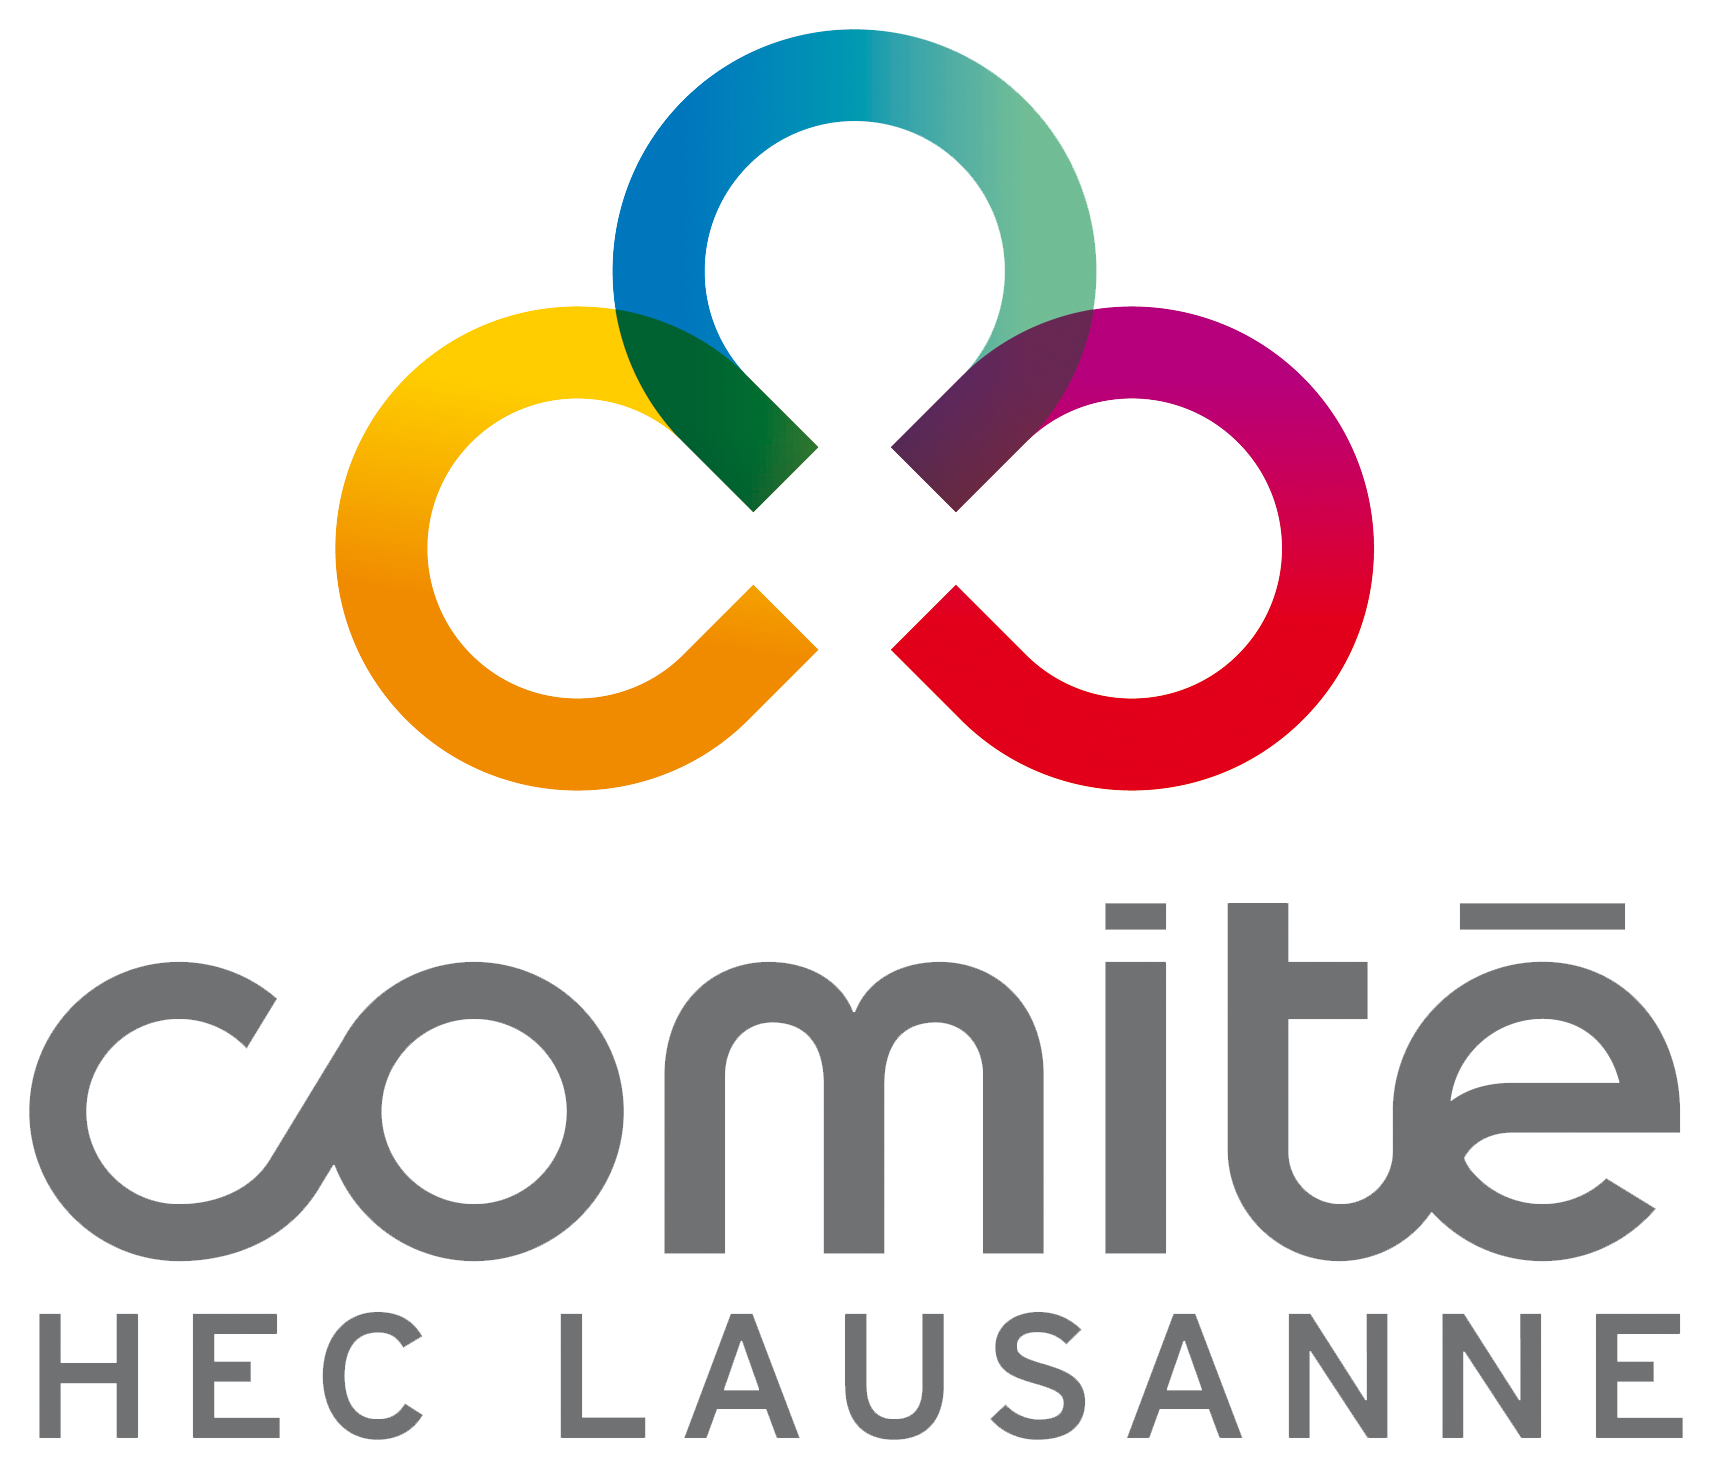 Logo Comité HEC